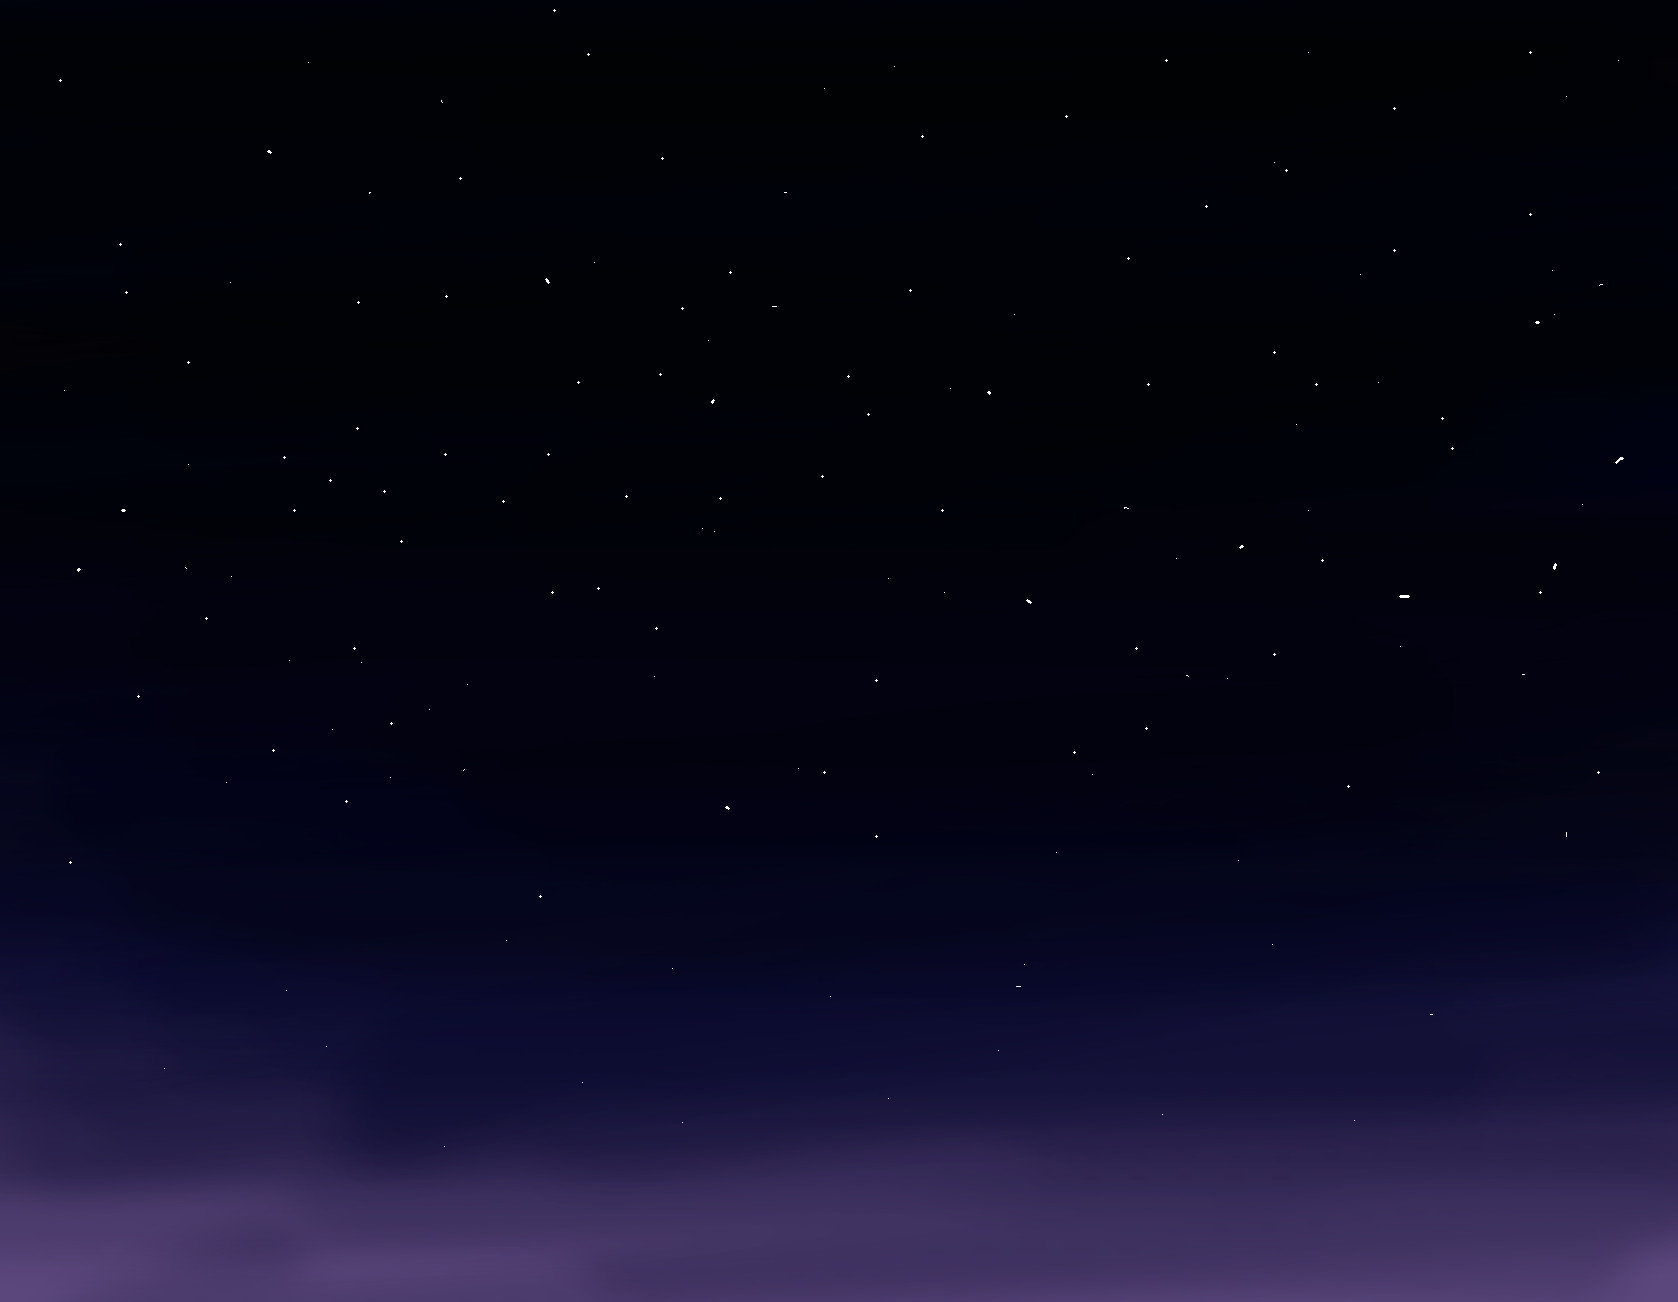 Một loạt những hình ảnh đỉnh cao của bầu trời đêm, với free download - Starry Night Sky, được tặng miễn phí chỉ dành cho những người đam mê nghệ thuật và sáng tạo. Bạn có thể nhìn thấy những vì sao sáng ngời và cảm nhận được vẻ đẹp của thiên nhiên trong cảnh này.